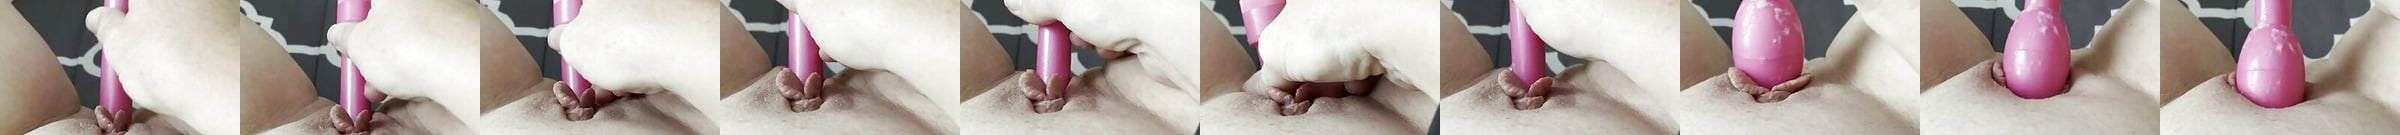 Rabbit G Spot Vibrator For Women Or Couples Free Porn F1 Xhamster